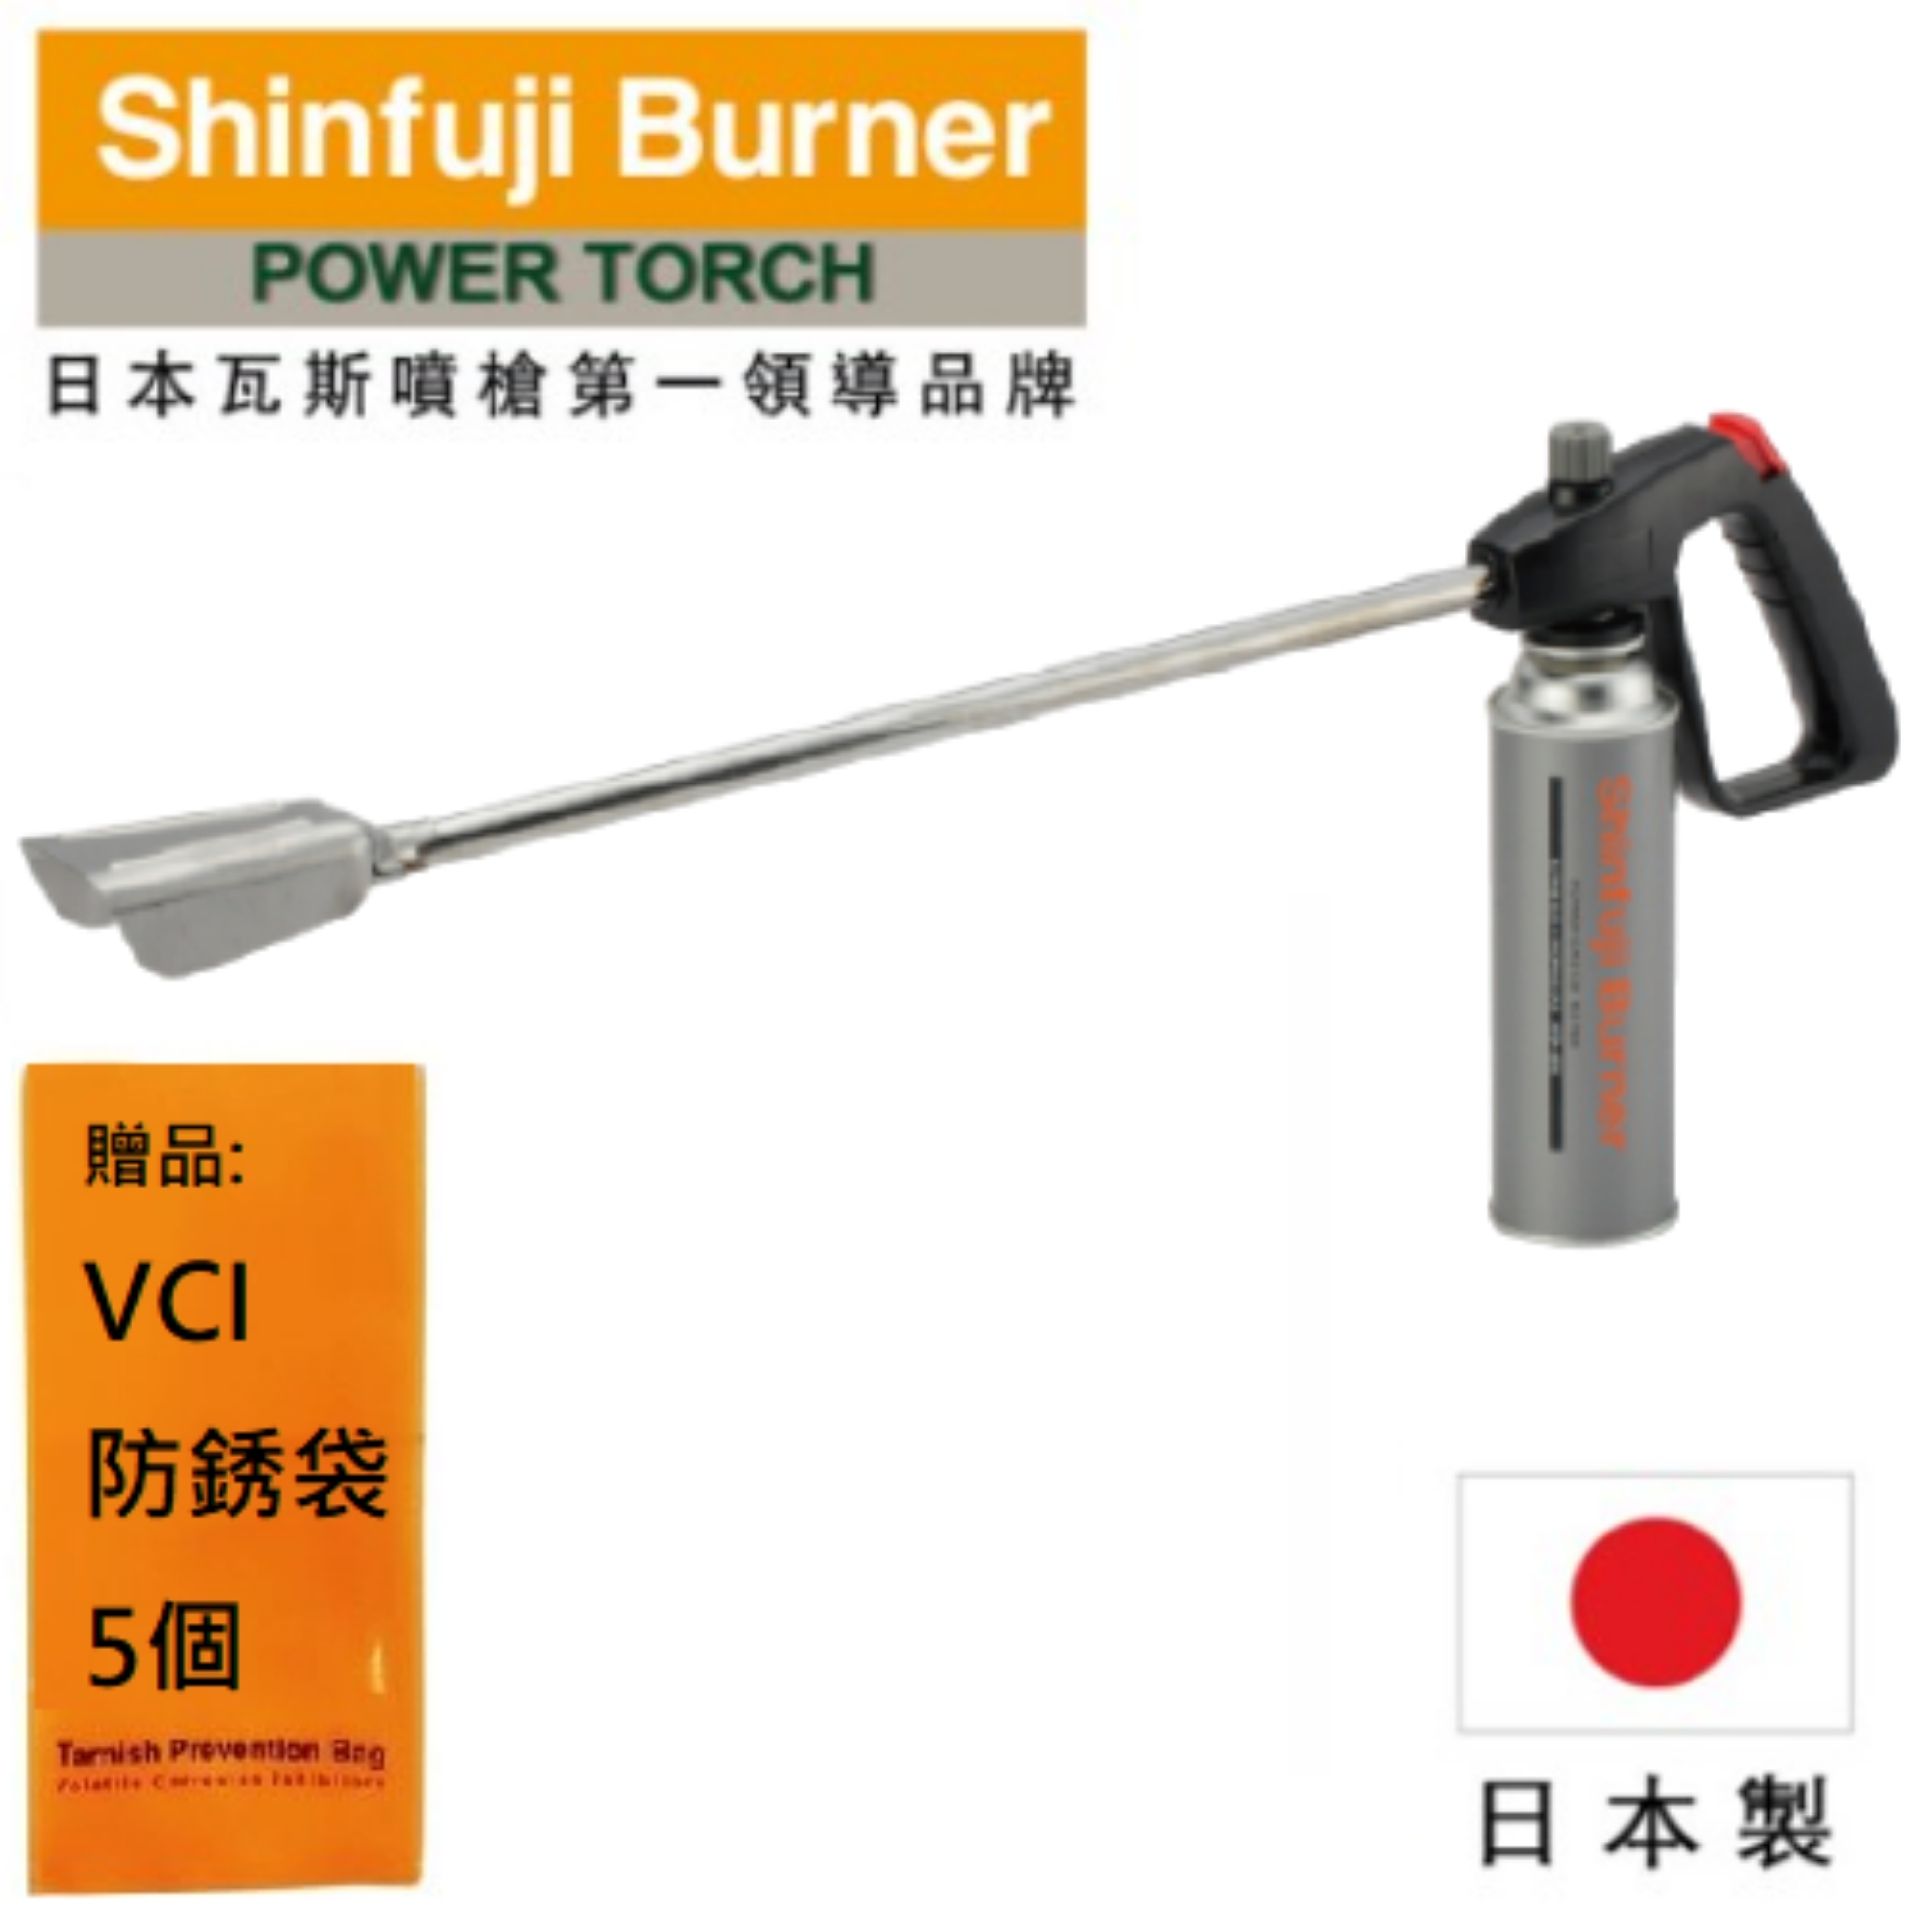 【SHINFUJI 新富士】 長型瓦斯噴槍 用於除冰/乾燥和草皮燃燒操作